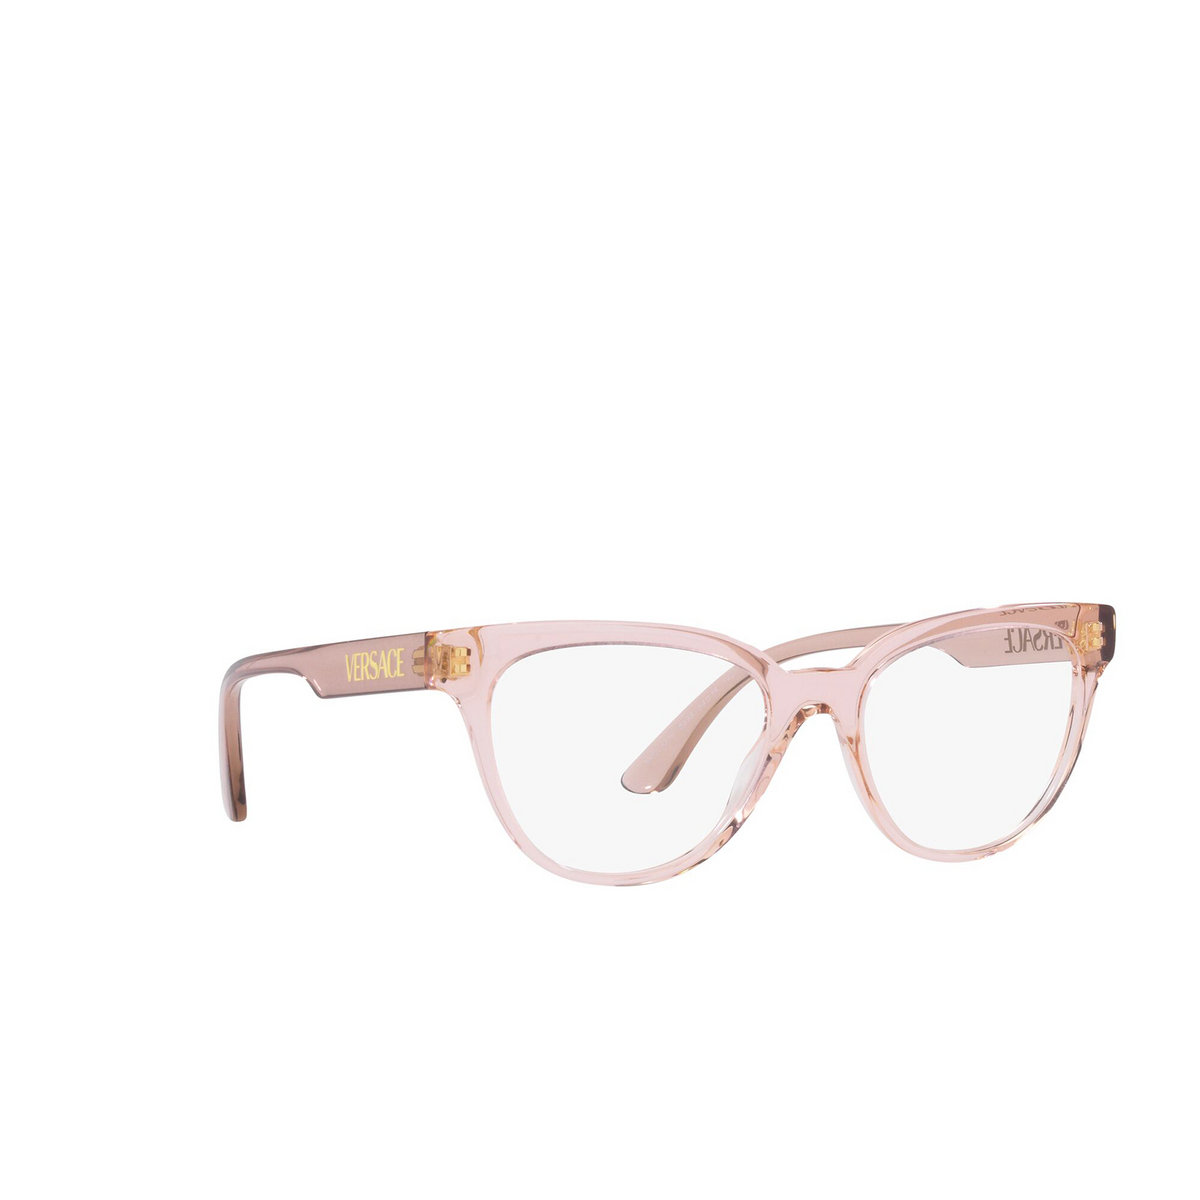 Occhiali da vista Versace VE3315 5339 Transparent Pink - tre quarti